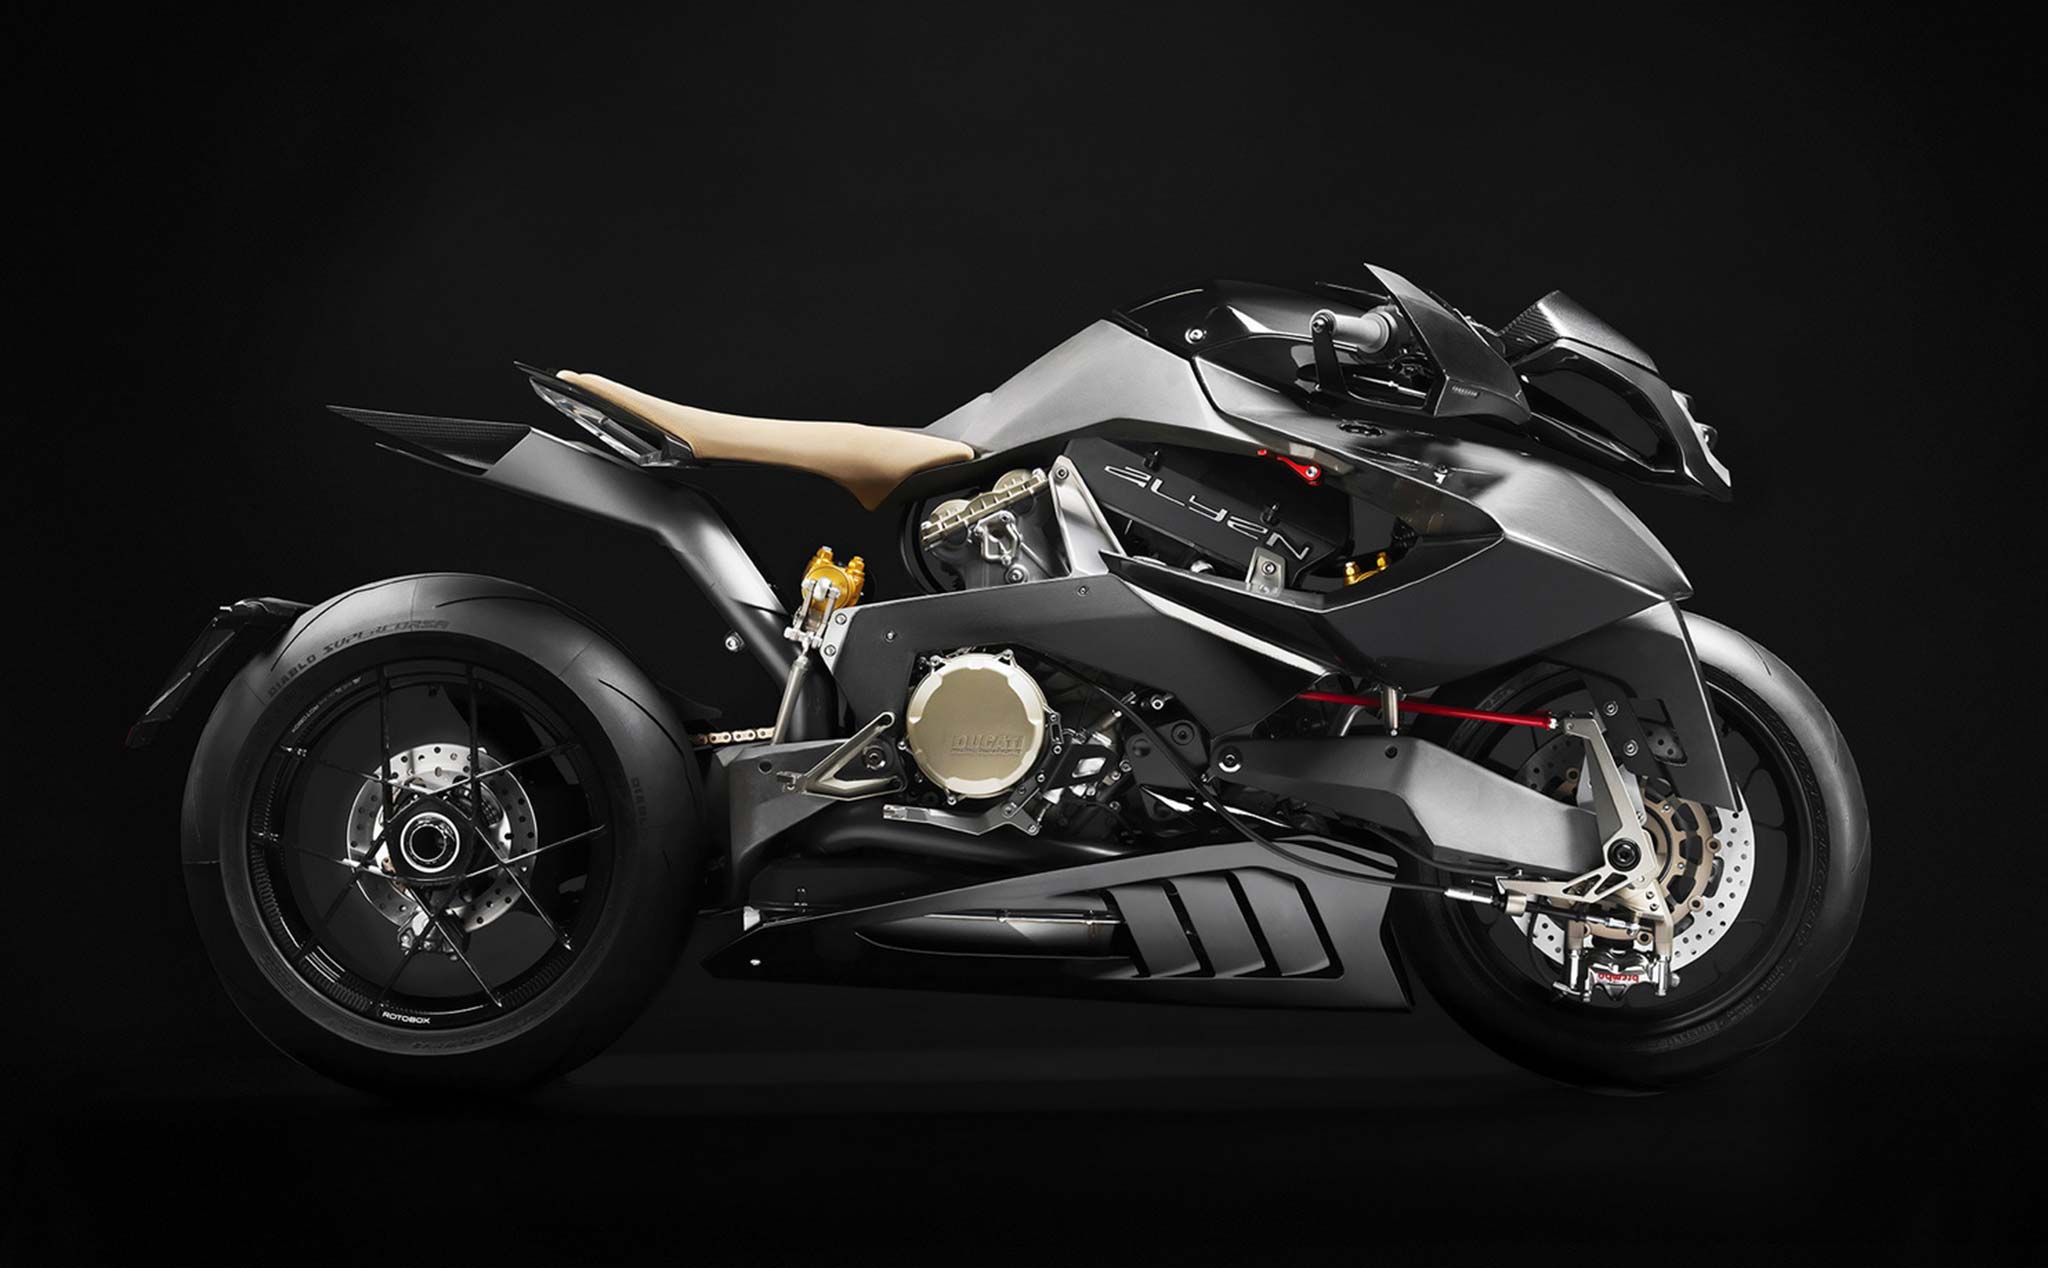 Vyrus giới thiệu chiếc sportbike Alyen 988 - sử dụng động cơ Ducati, như người ngoài hành tinh